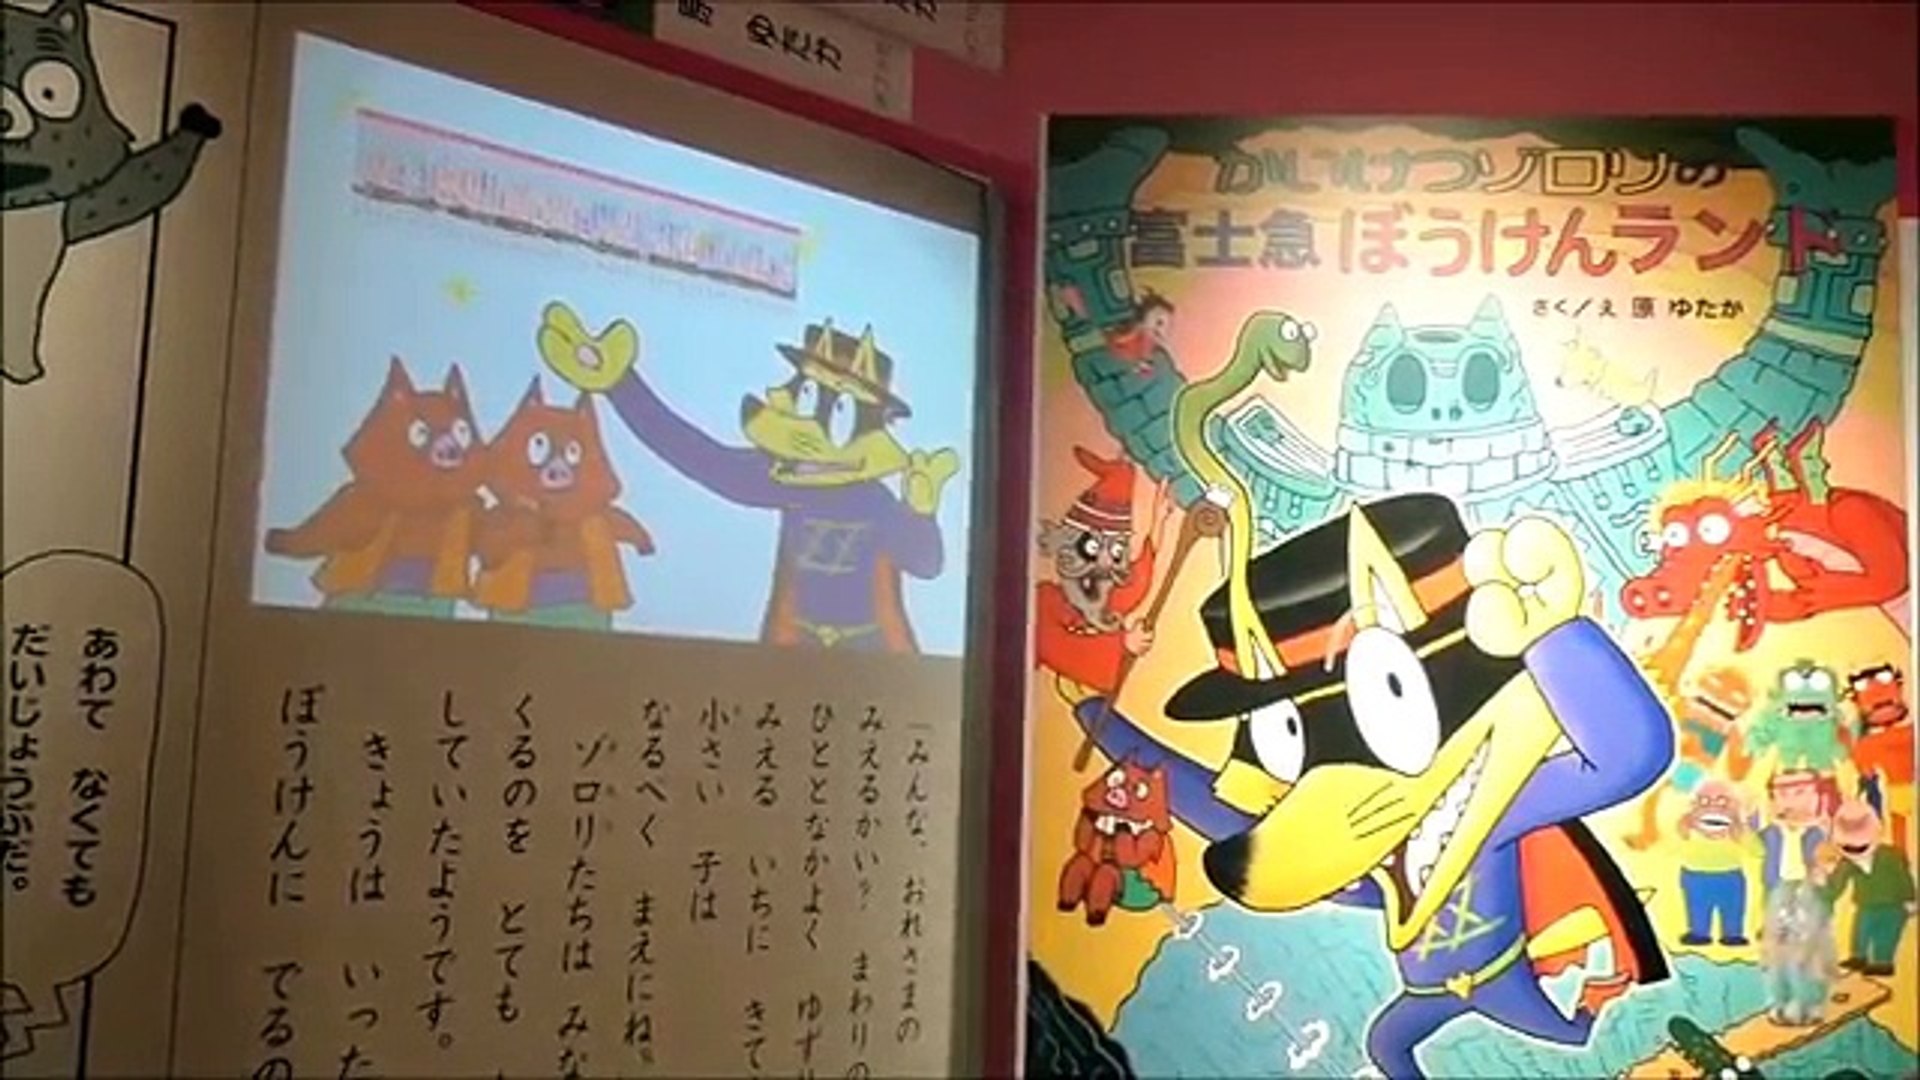 Kaiketsu Zorori S Adventure Land かいけつゾロリのぼうけんランドで遊んだよ In 富士急ハイランド Video Dailymotion